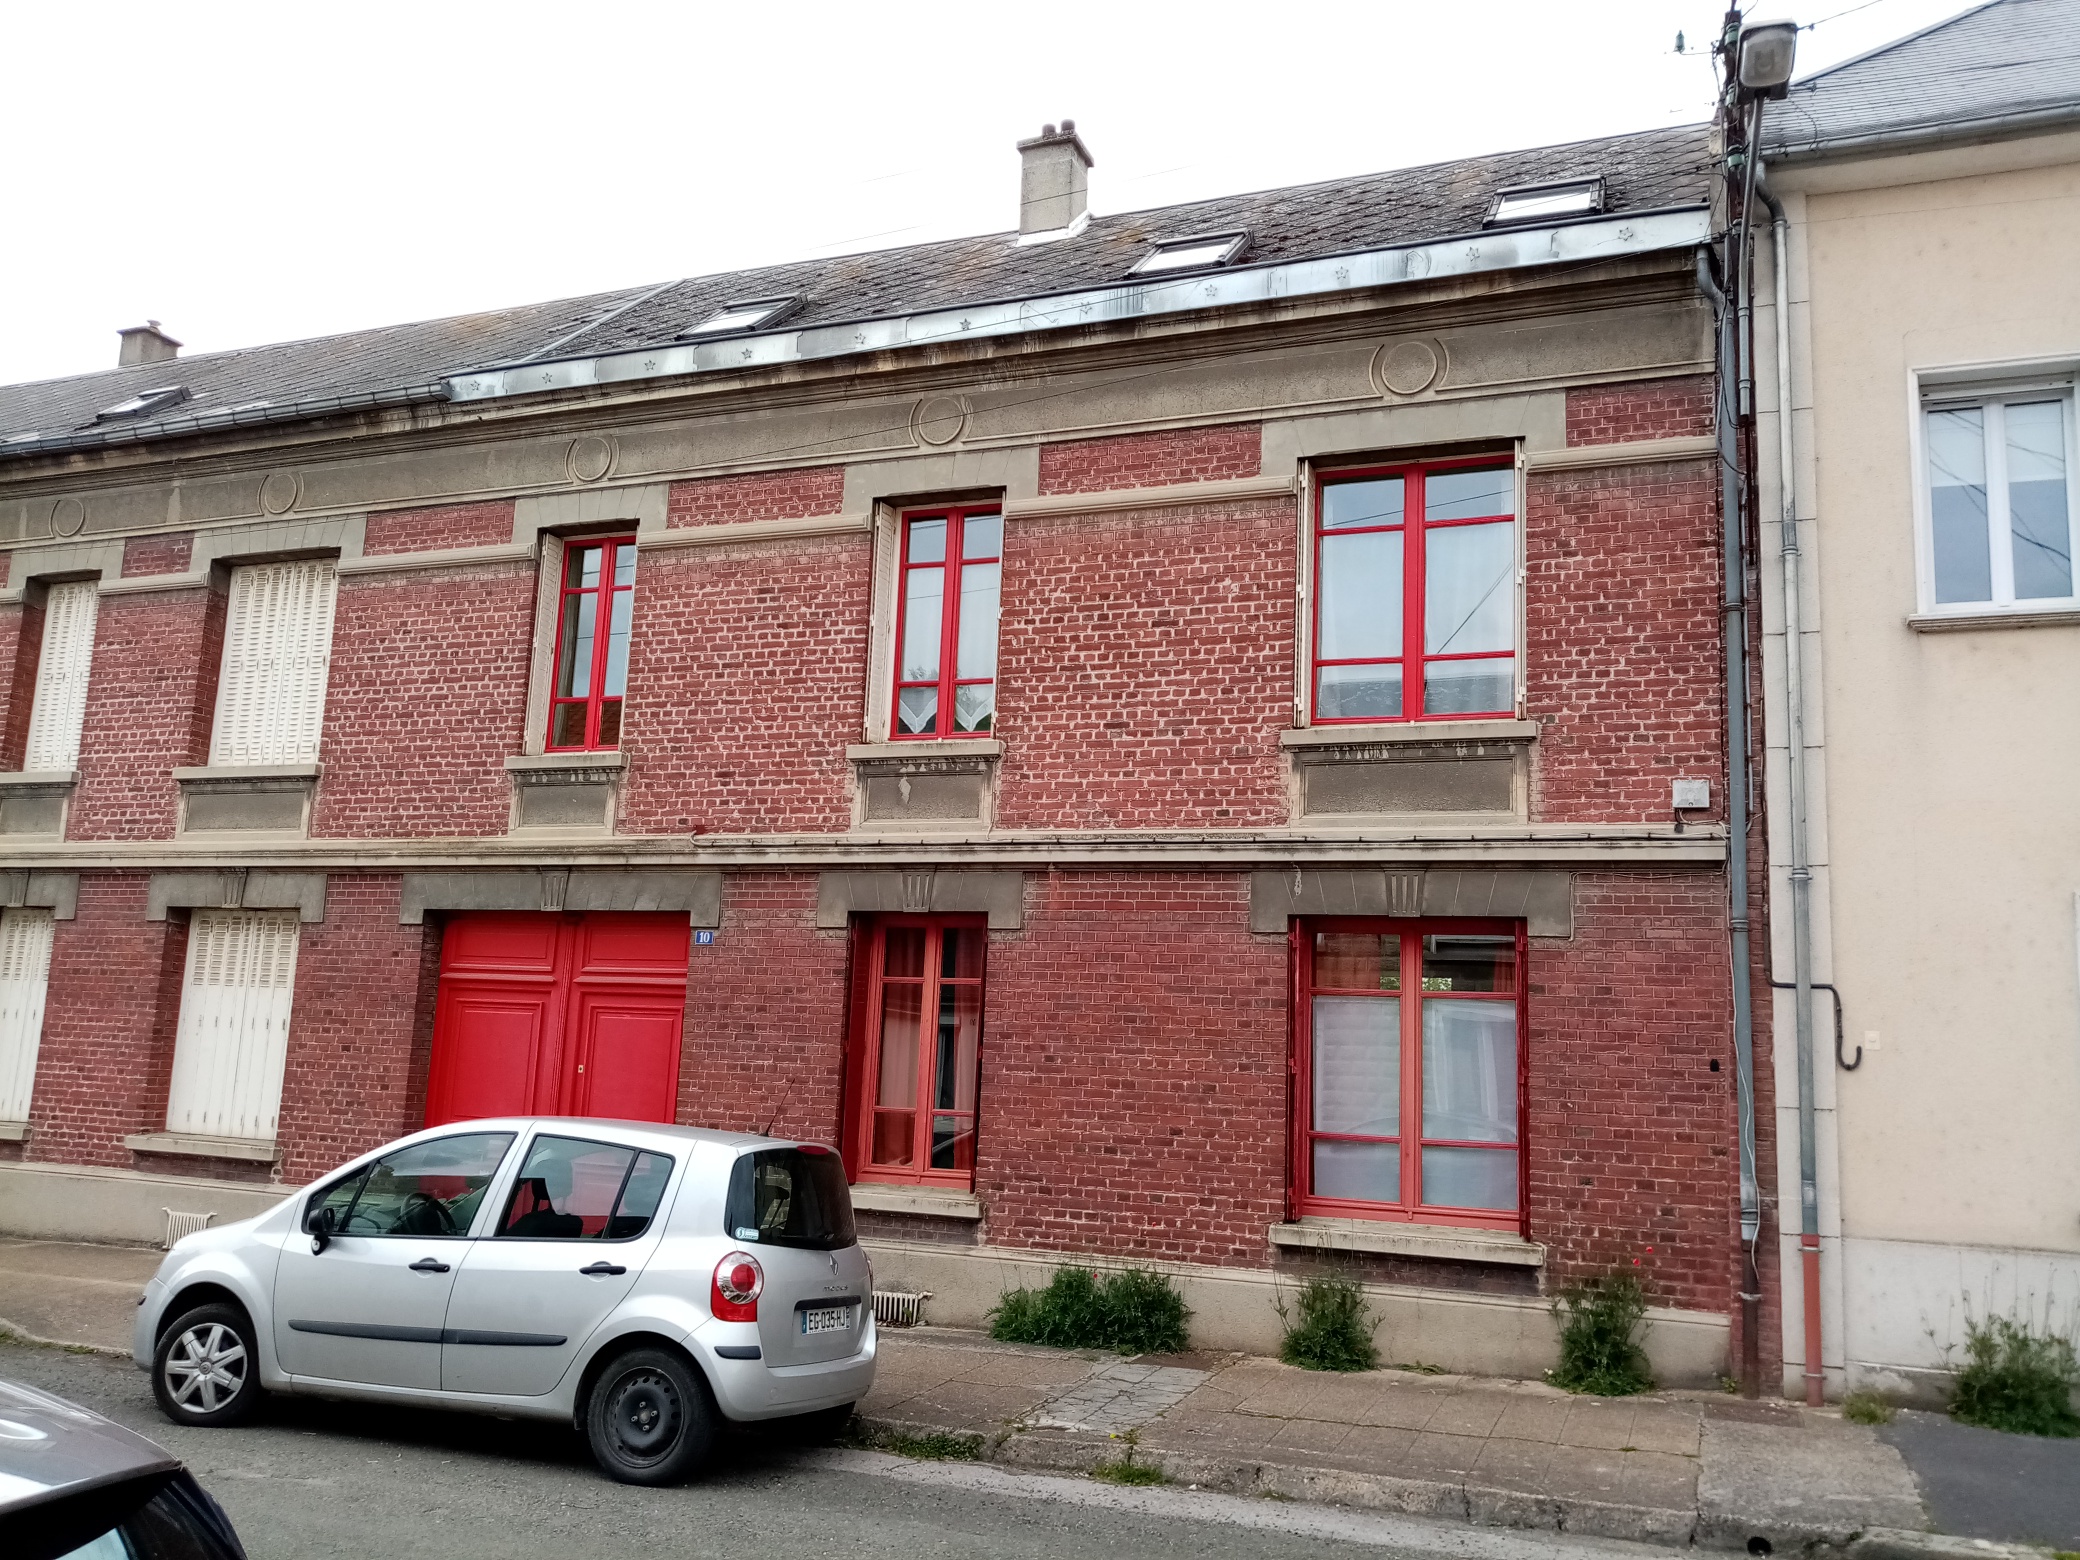 Rénover sa maison en toute sérénité grâce à l’accompagnement du Hauts-de-France Pass Rénovation   - Hauts-de-France Pass Rénovation